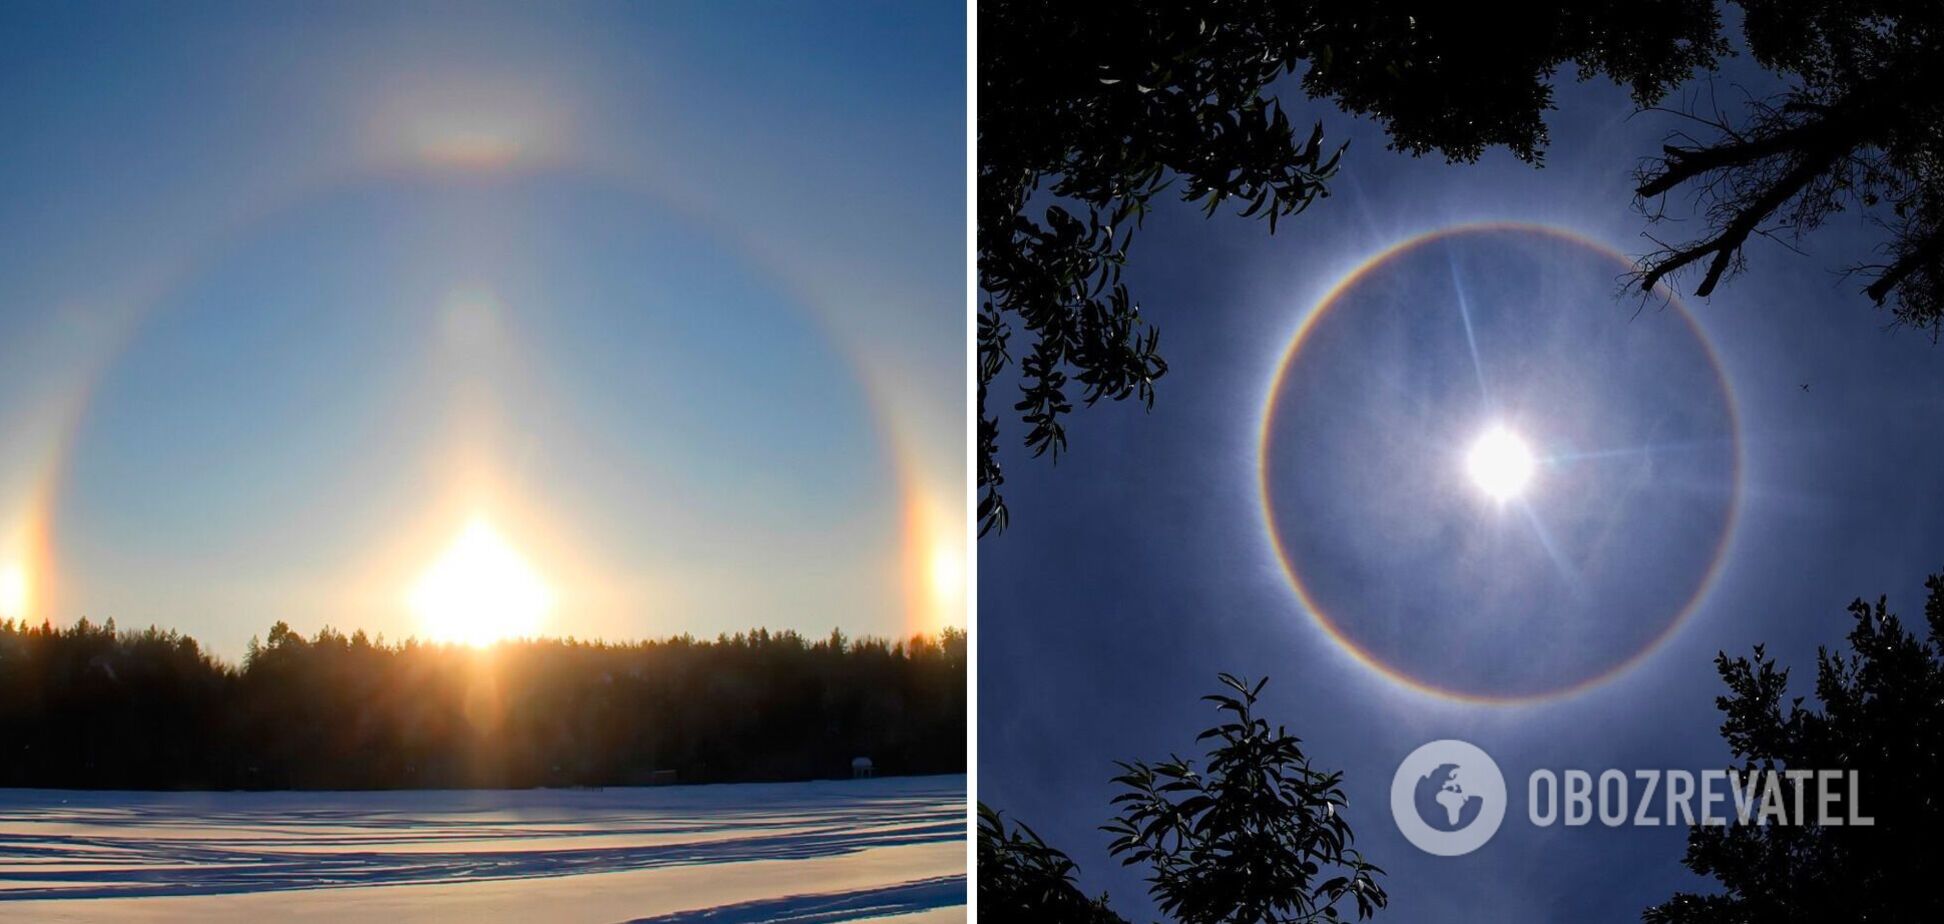 У Харкові спостерігали рідкісне оптичне явище: навколо сонця виникло кільце, що світилося. Фото